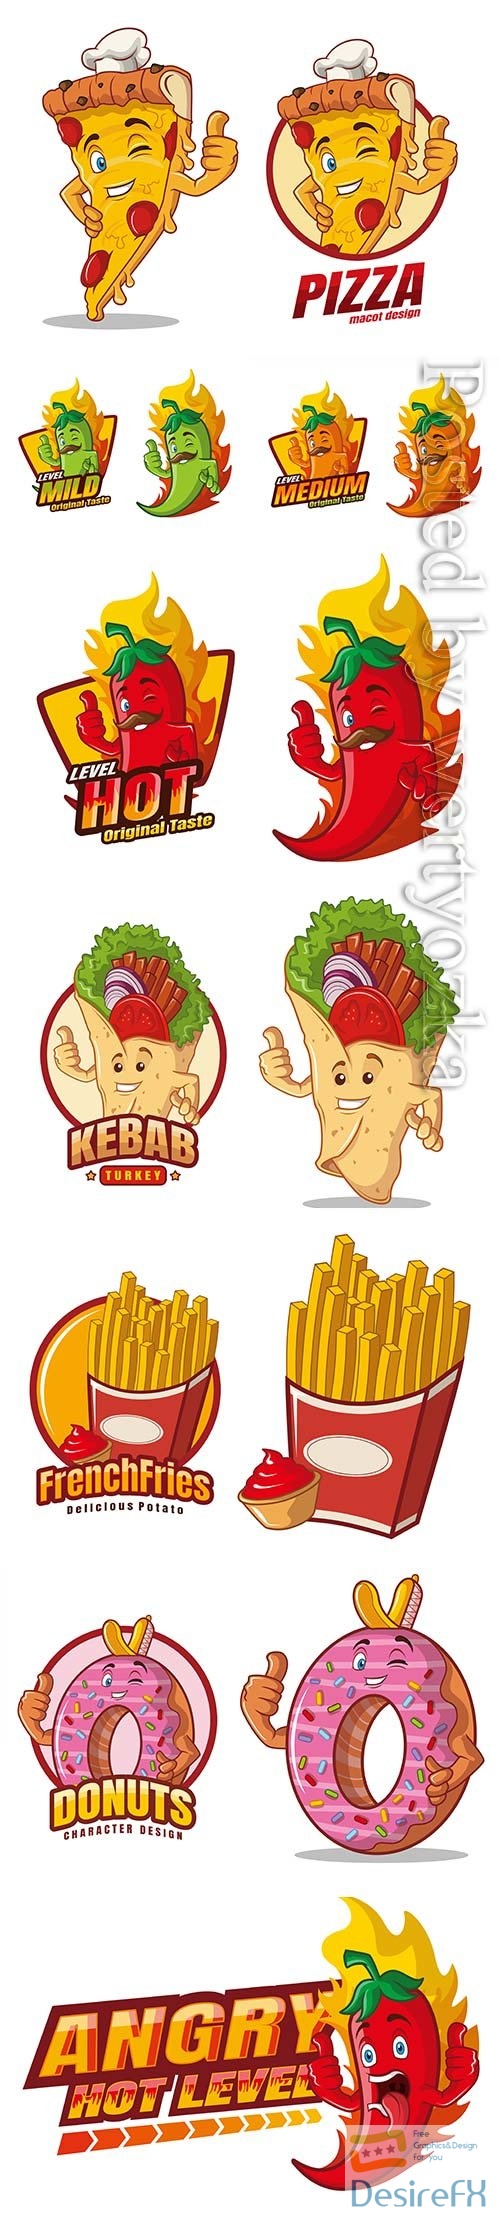 Food cartoon character mascot vector design